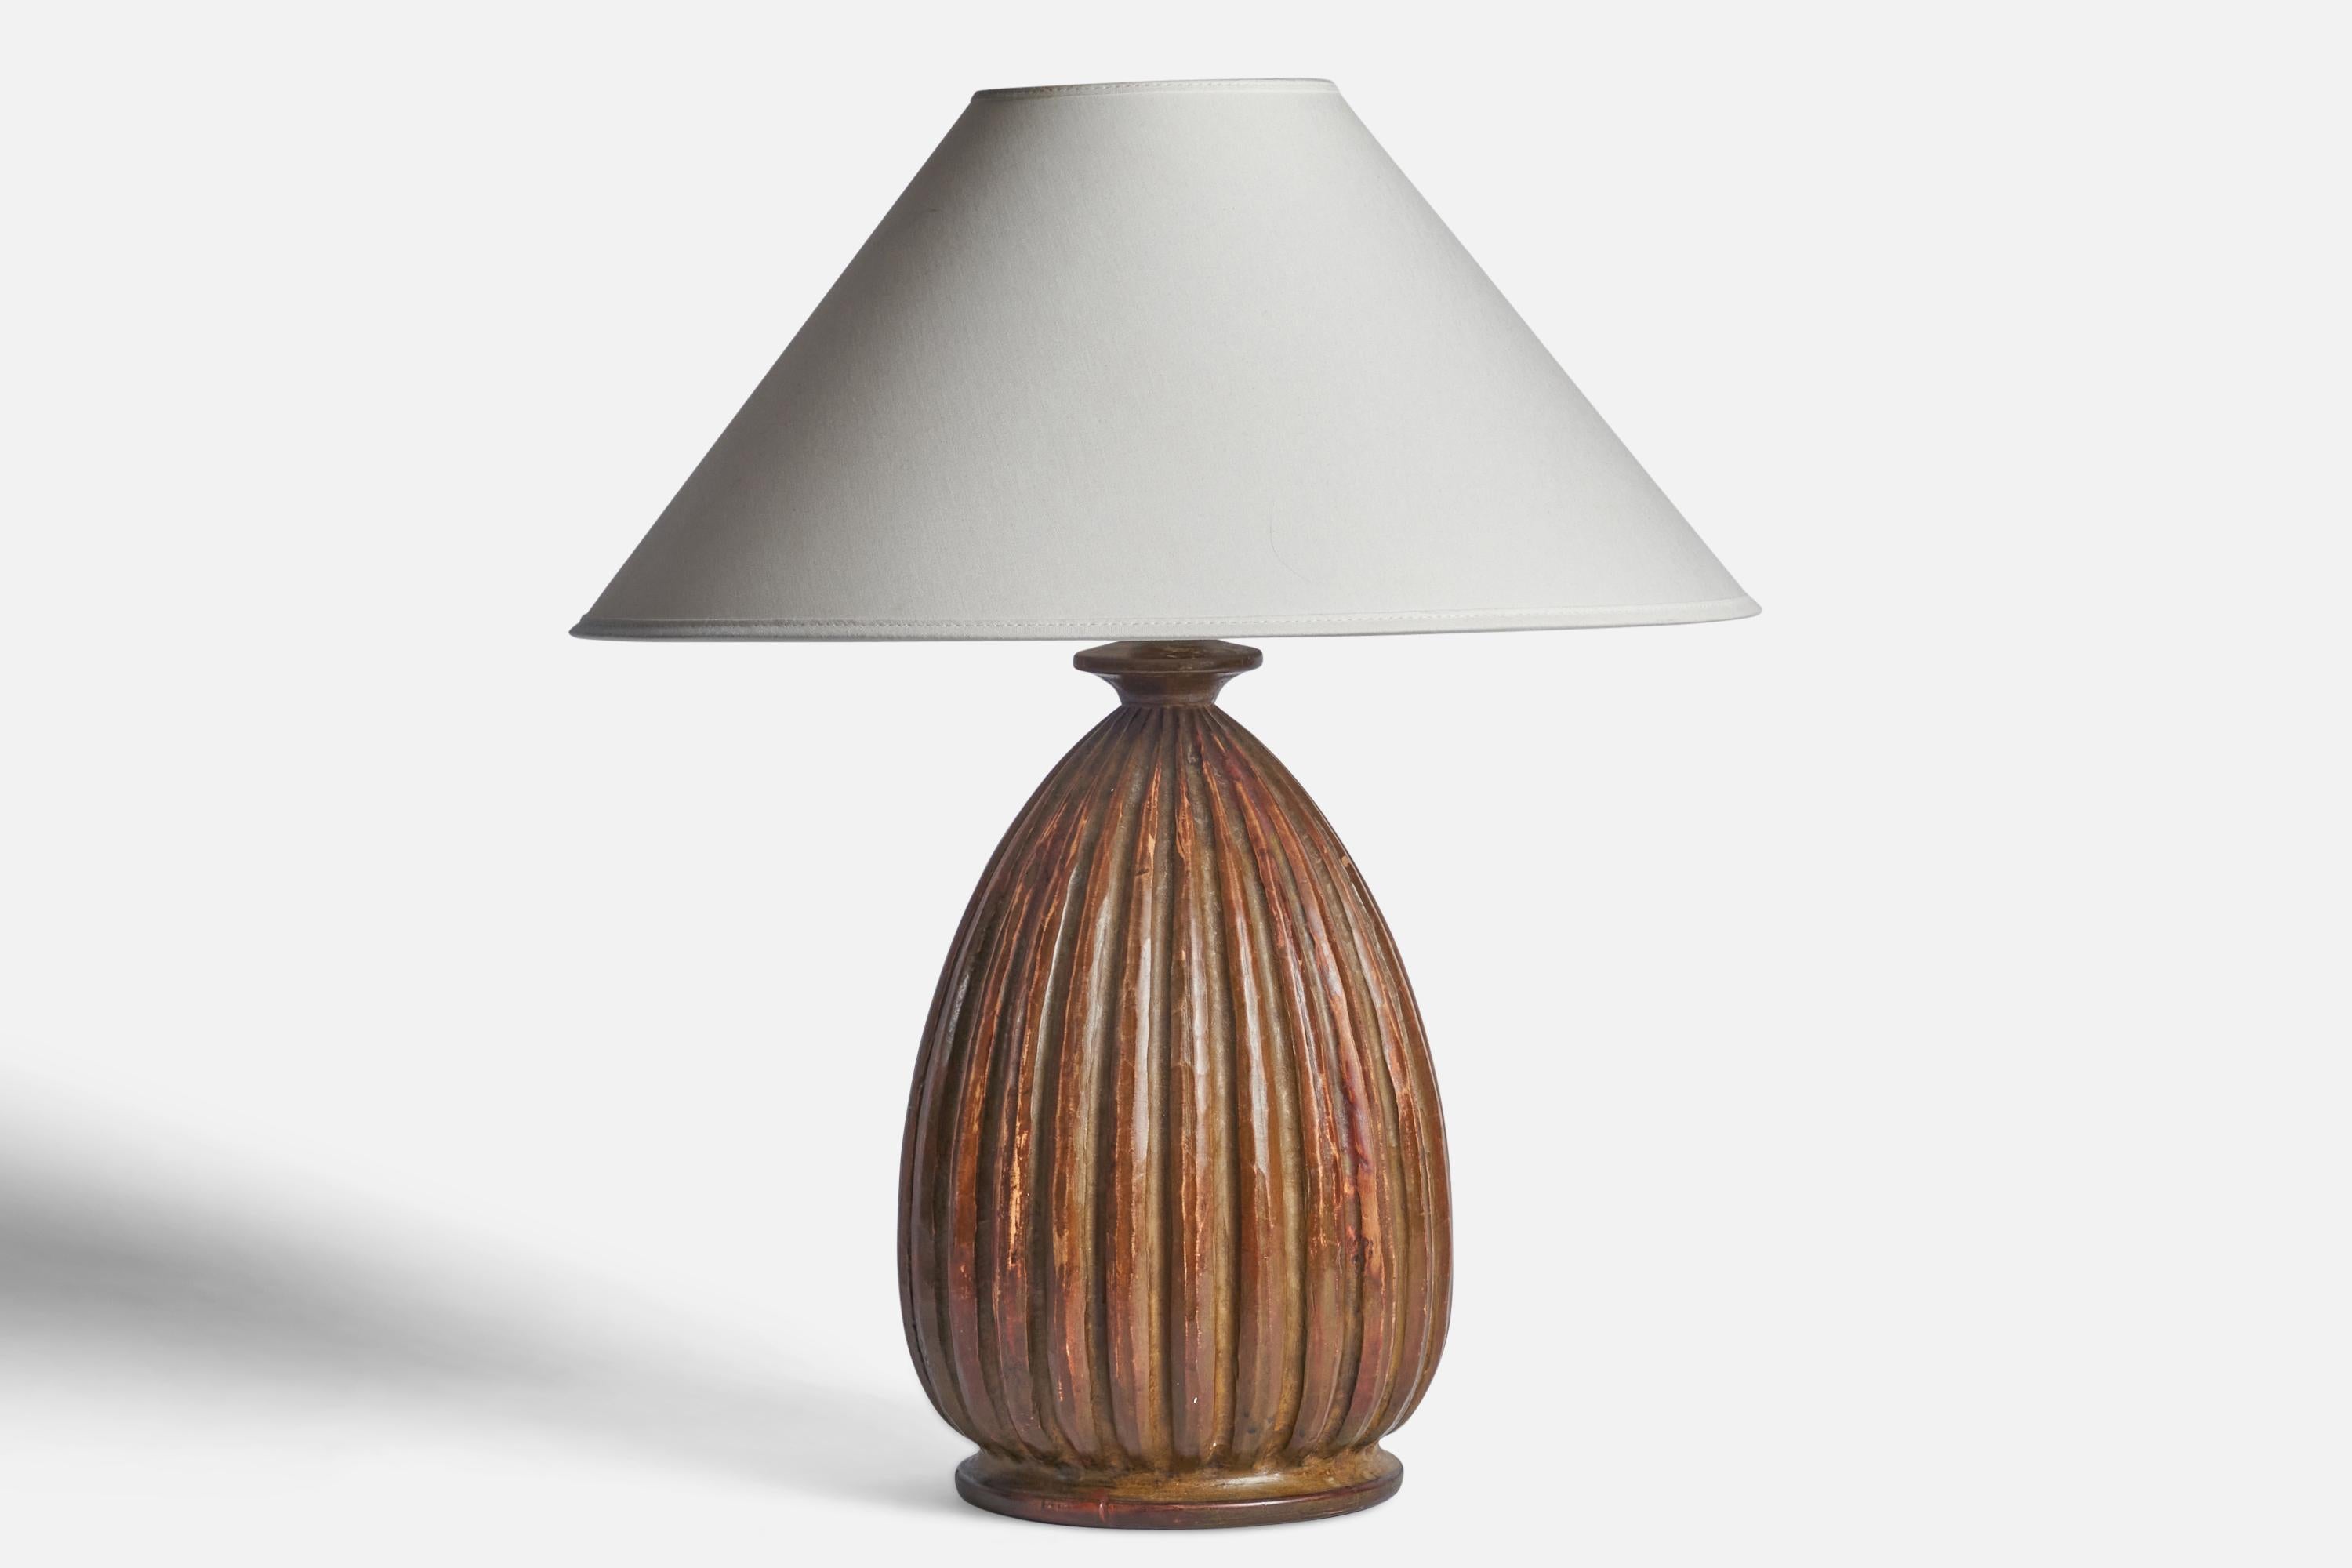 Importante lampe de table en bois cannelé conçue et produite en Suède, vers les années 1940.

Dimensions de la lampe (pouces) : 14.15